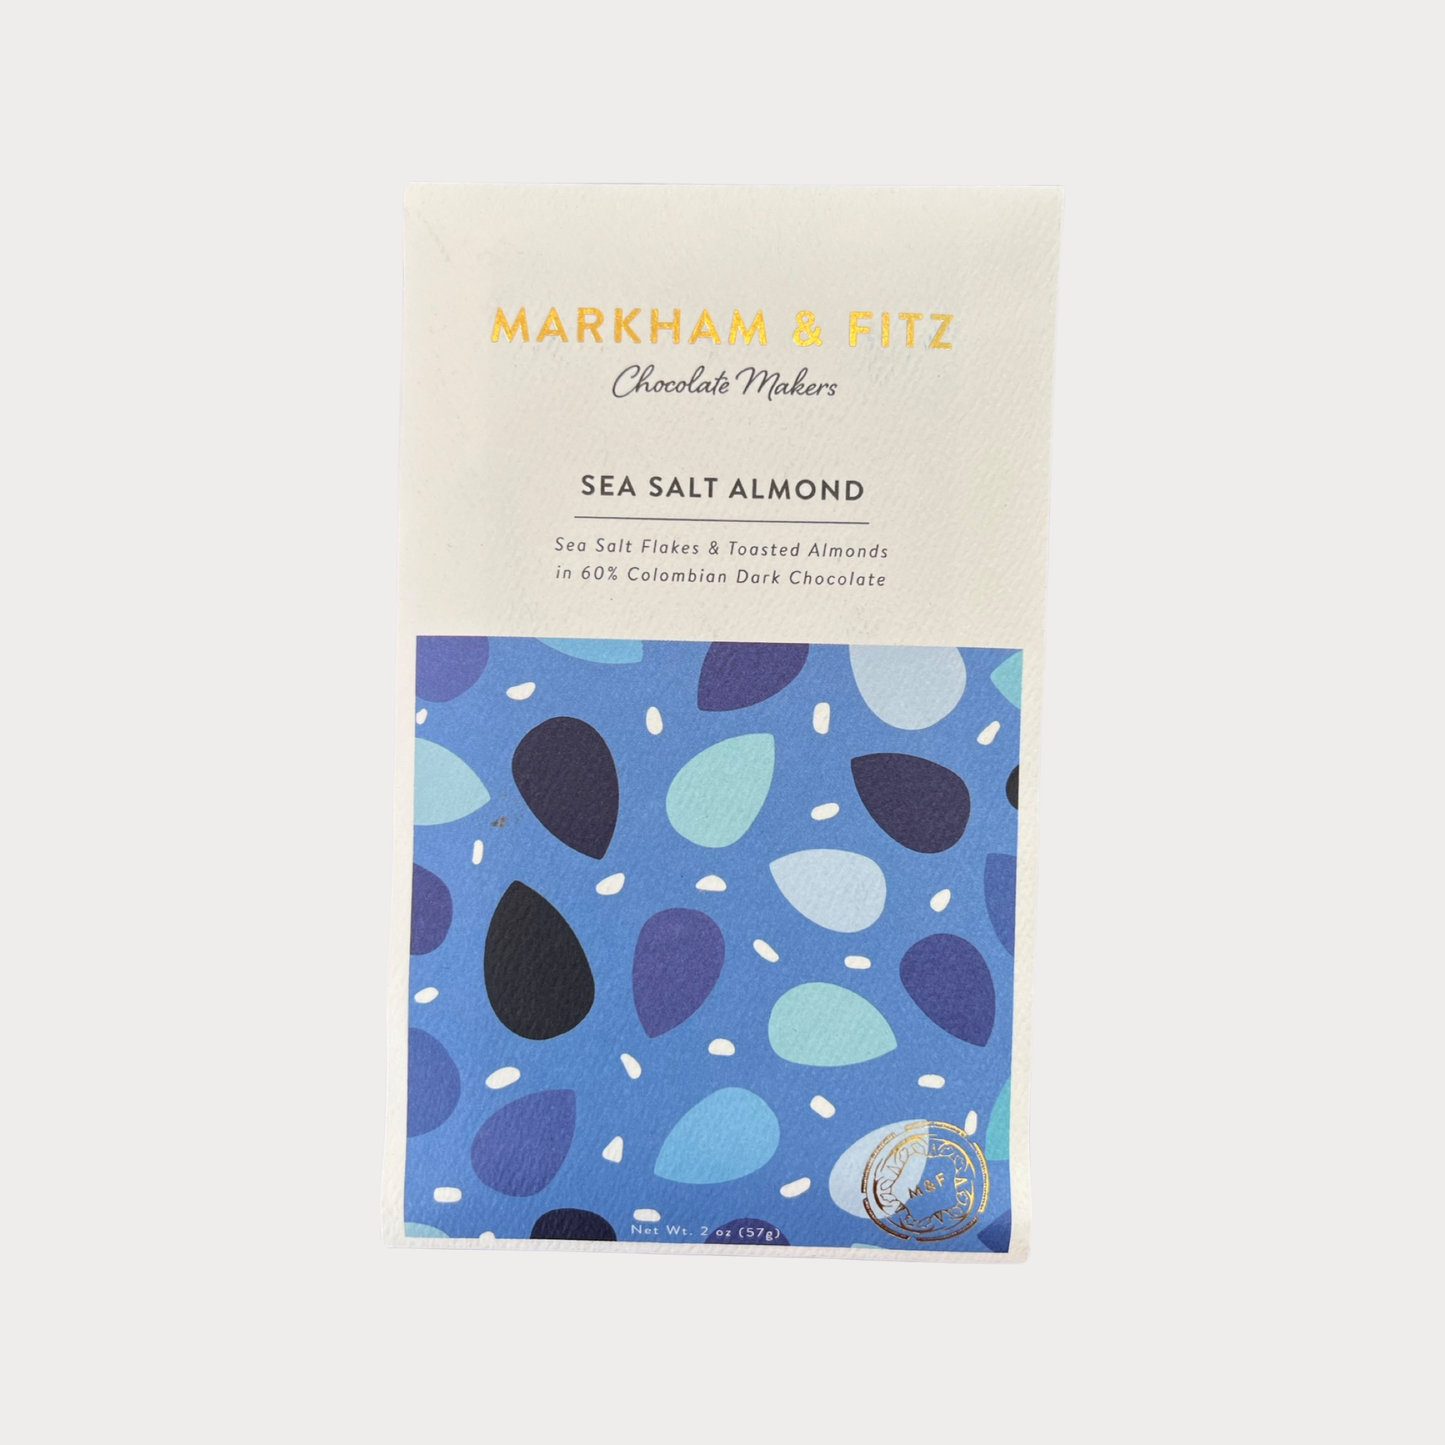 Markham & Fitz Sea Salt & Almond 60%, 2oz